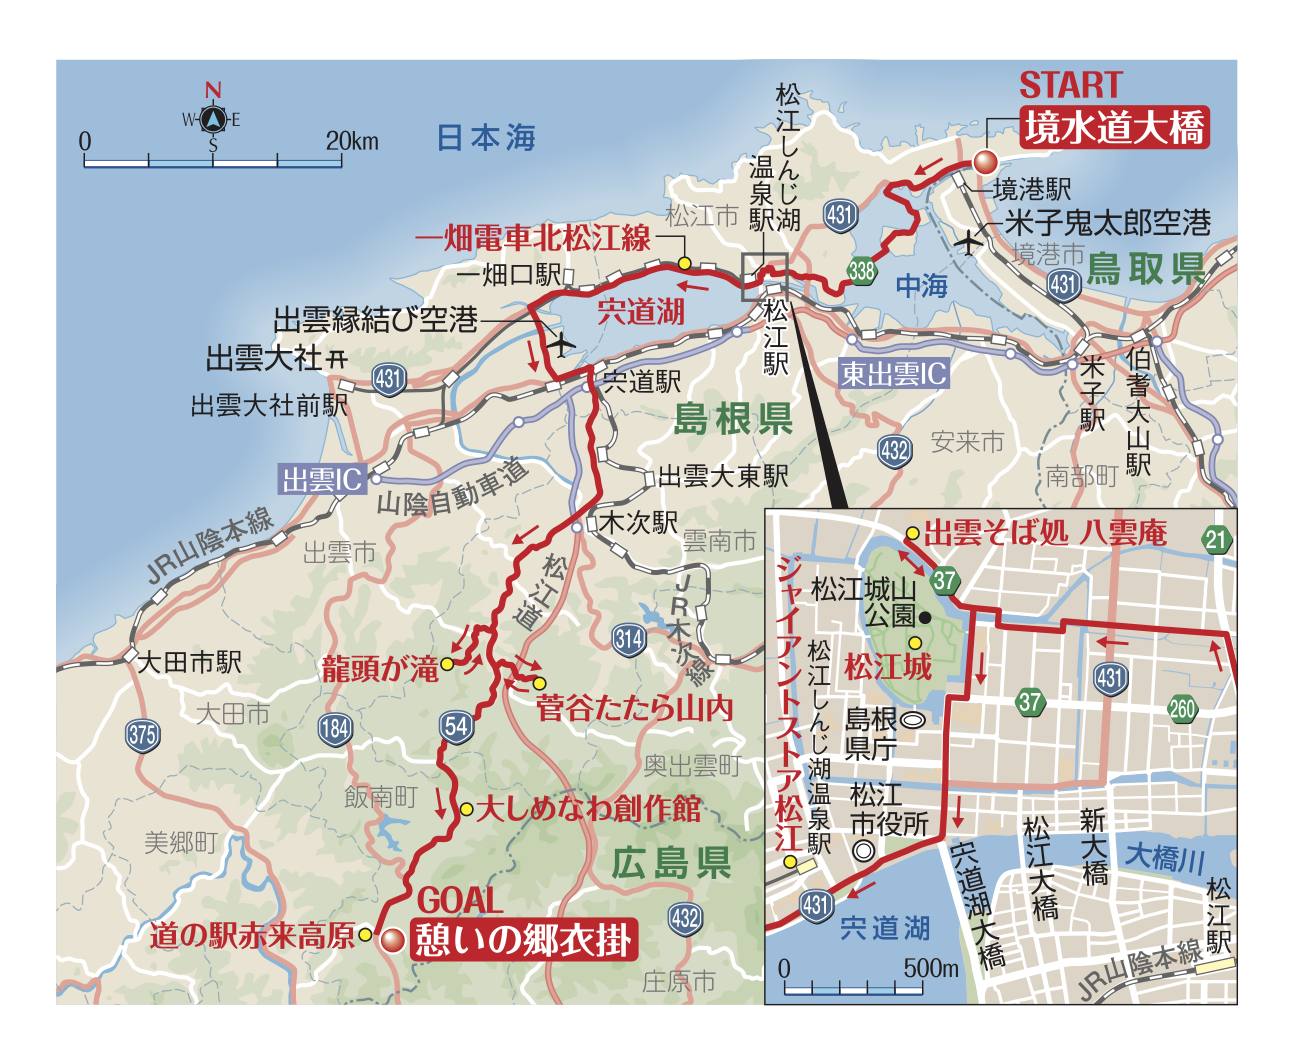 島根県 道端カレンが行く 鳥取 島根 広島 愛媛をつなぐロードバイク旅コース Bicycle Club